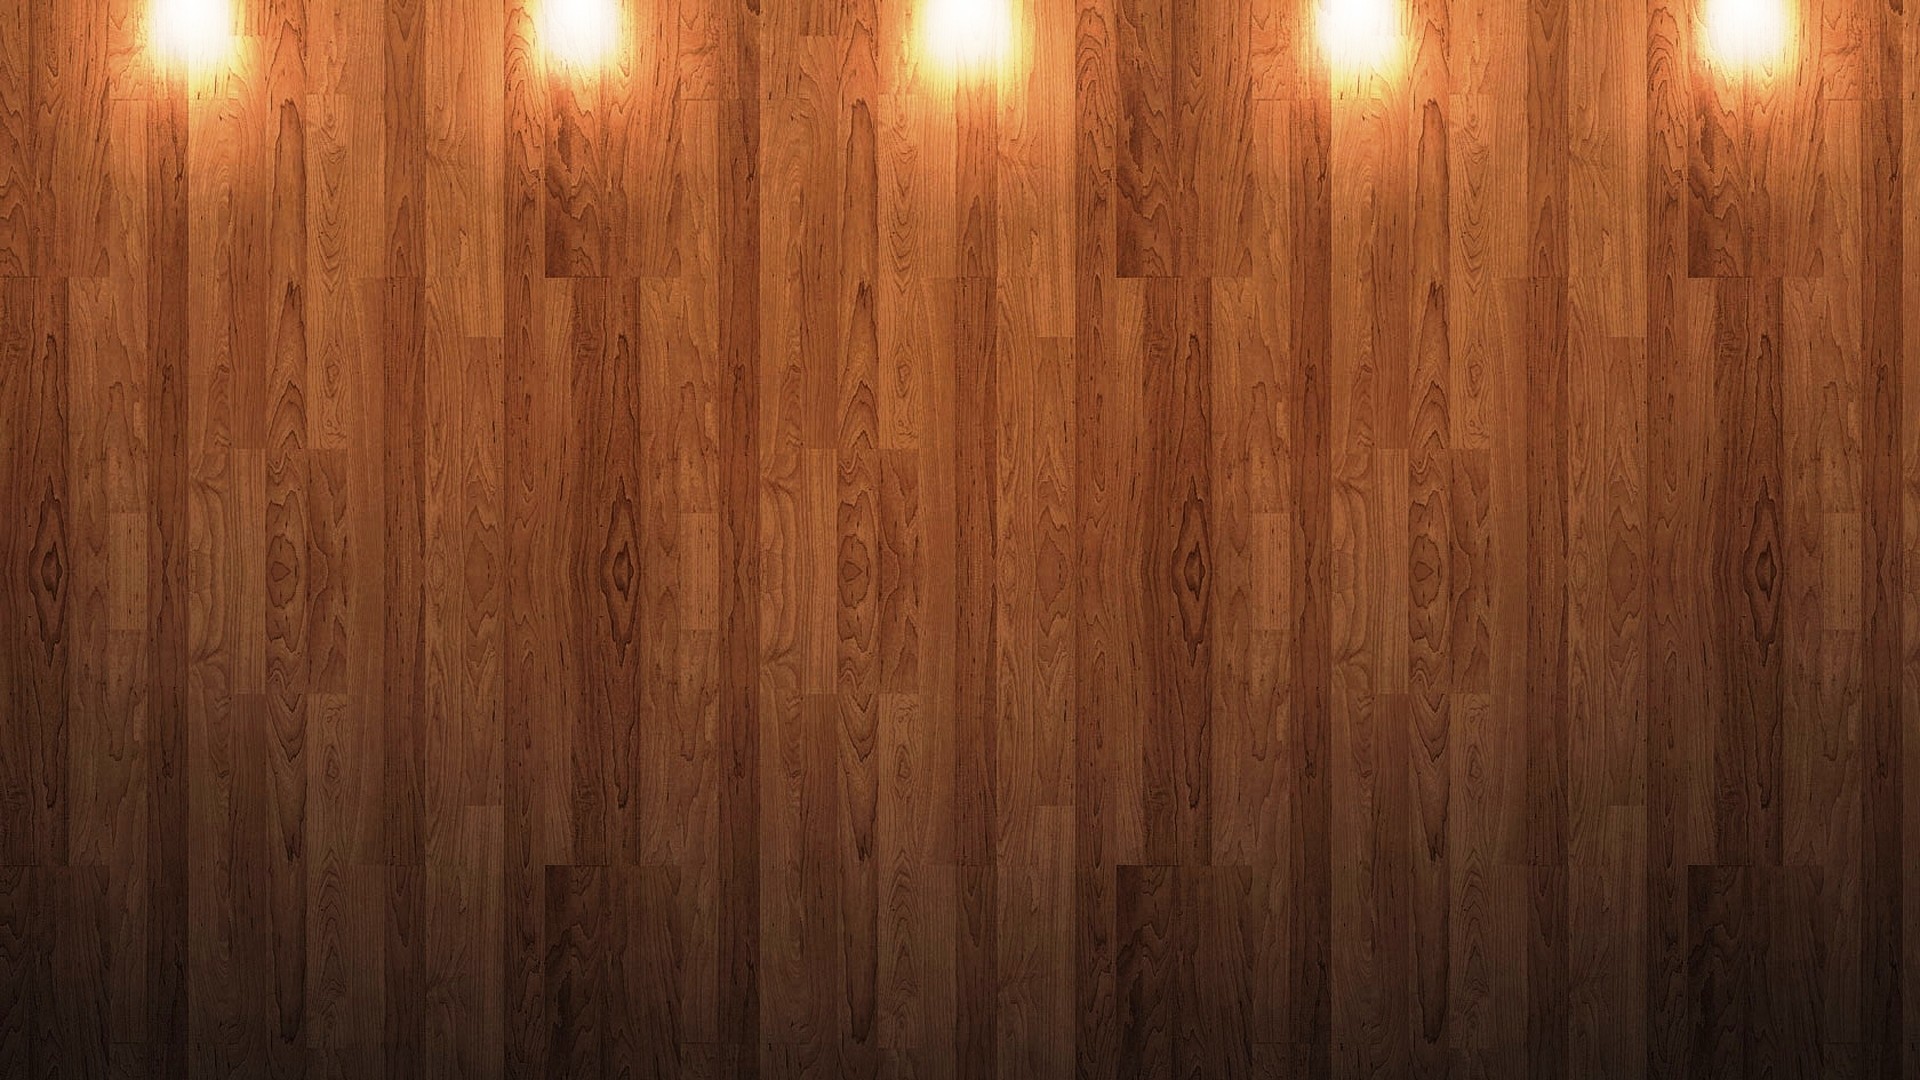 1920x1080 Wood HD Wallpaper | Hintergrund |  | ID:366341 - Wallpaper Abyss